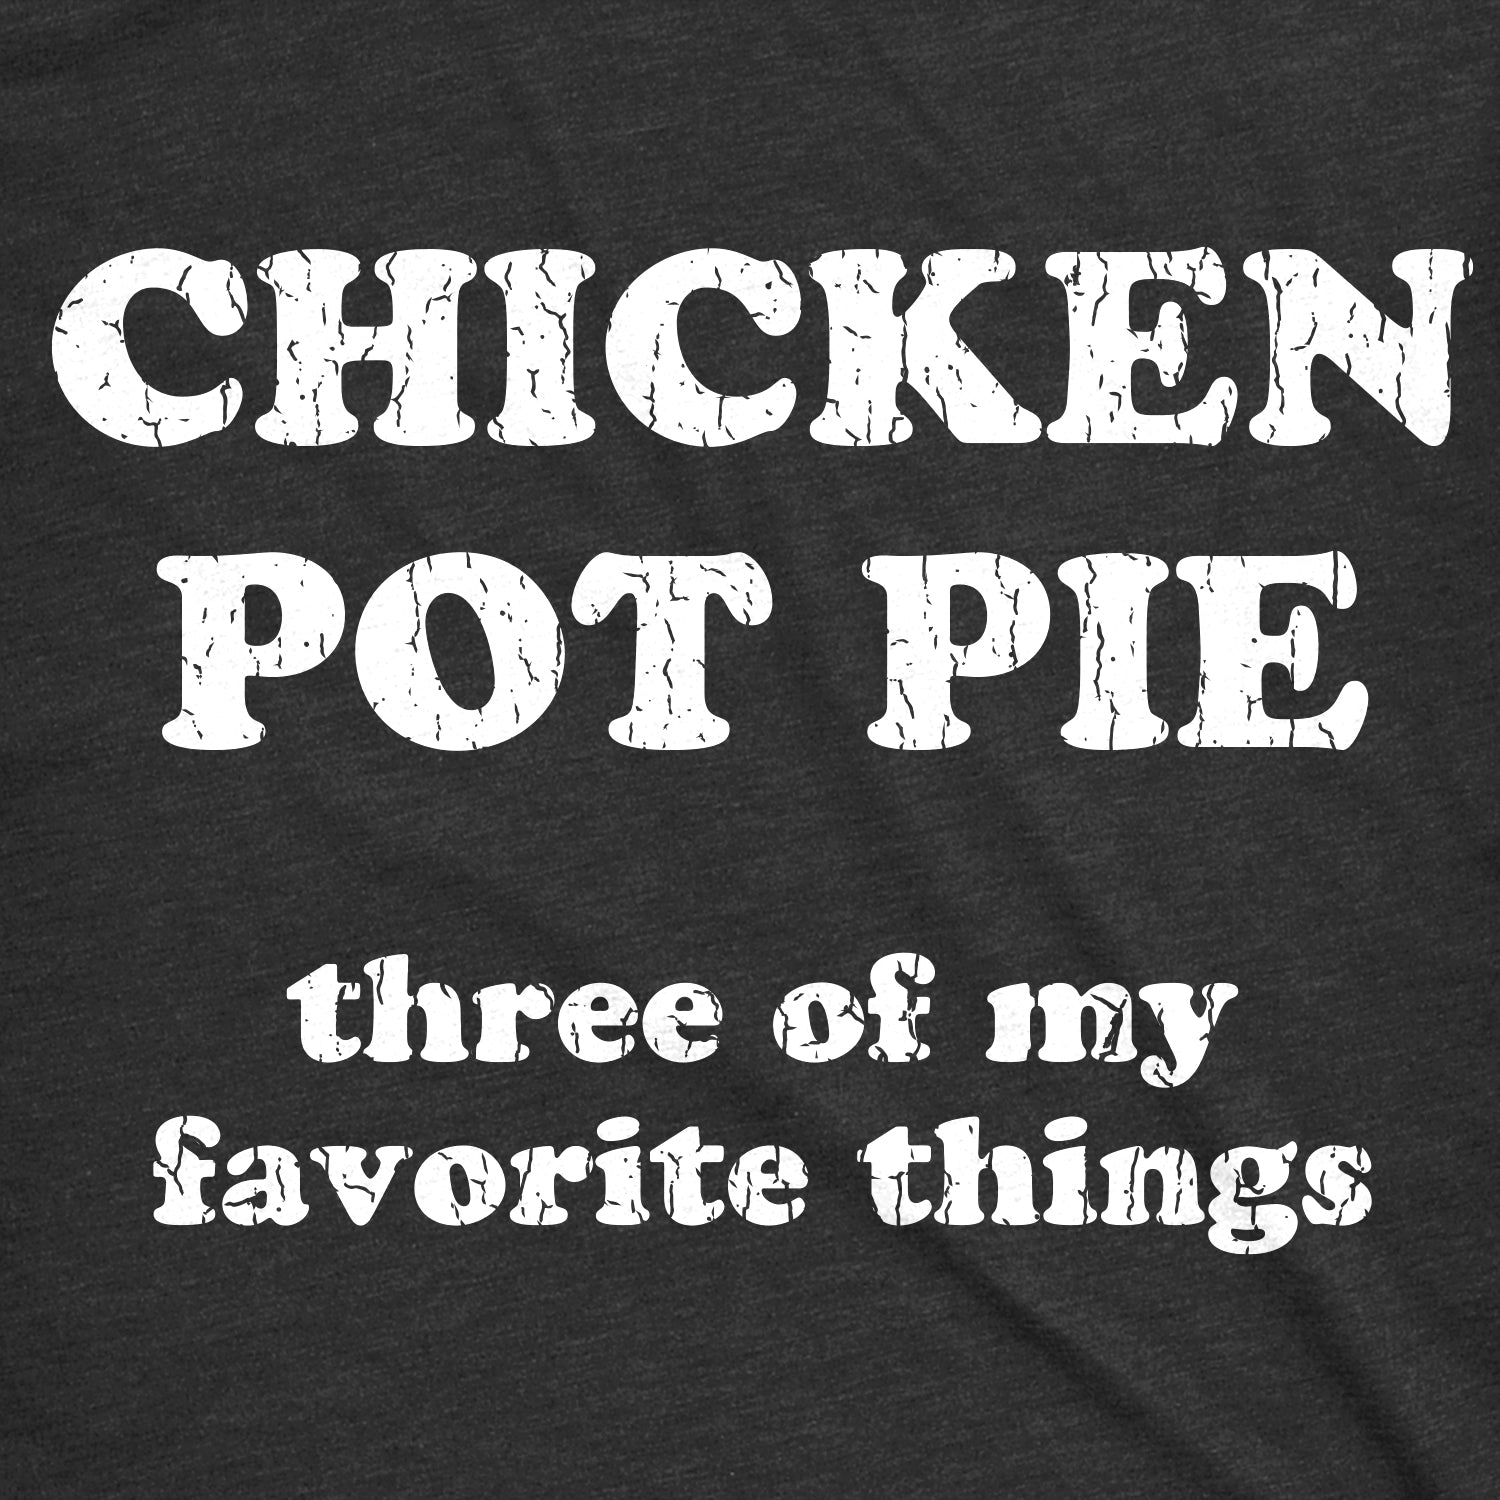 Funny Heather Black - Chicken Pot Pie Chicken Pot Pie Womens T Shirt Nerdy 420 Tee